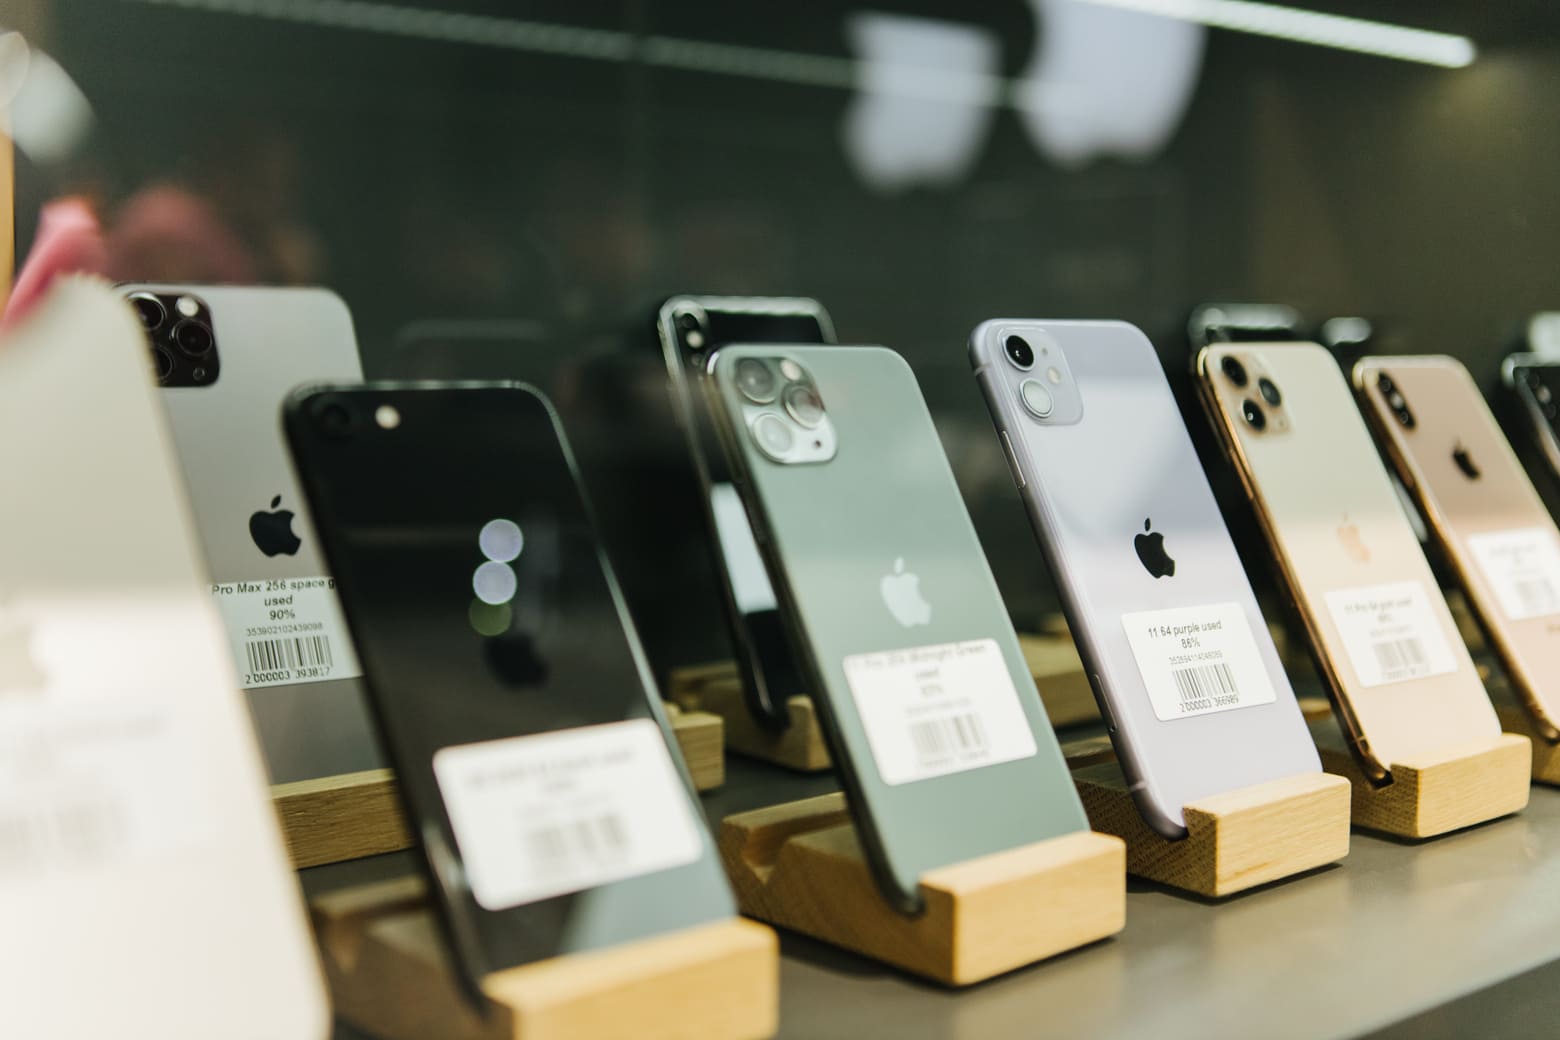 Ein Chinese hat Jahre damit verbracht, bei Apple gefälschte iPhones gegen echte zu tauschen. Er verdiente 1 Million Dollar und über 2 Jahre Gefängnis